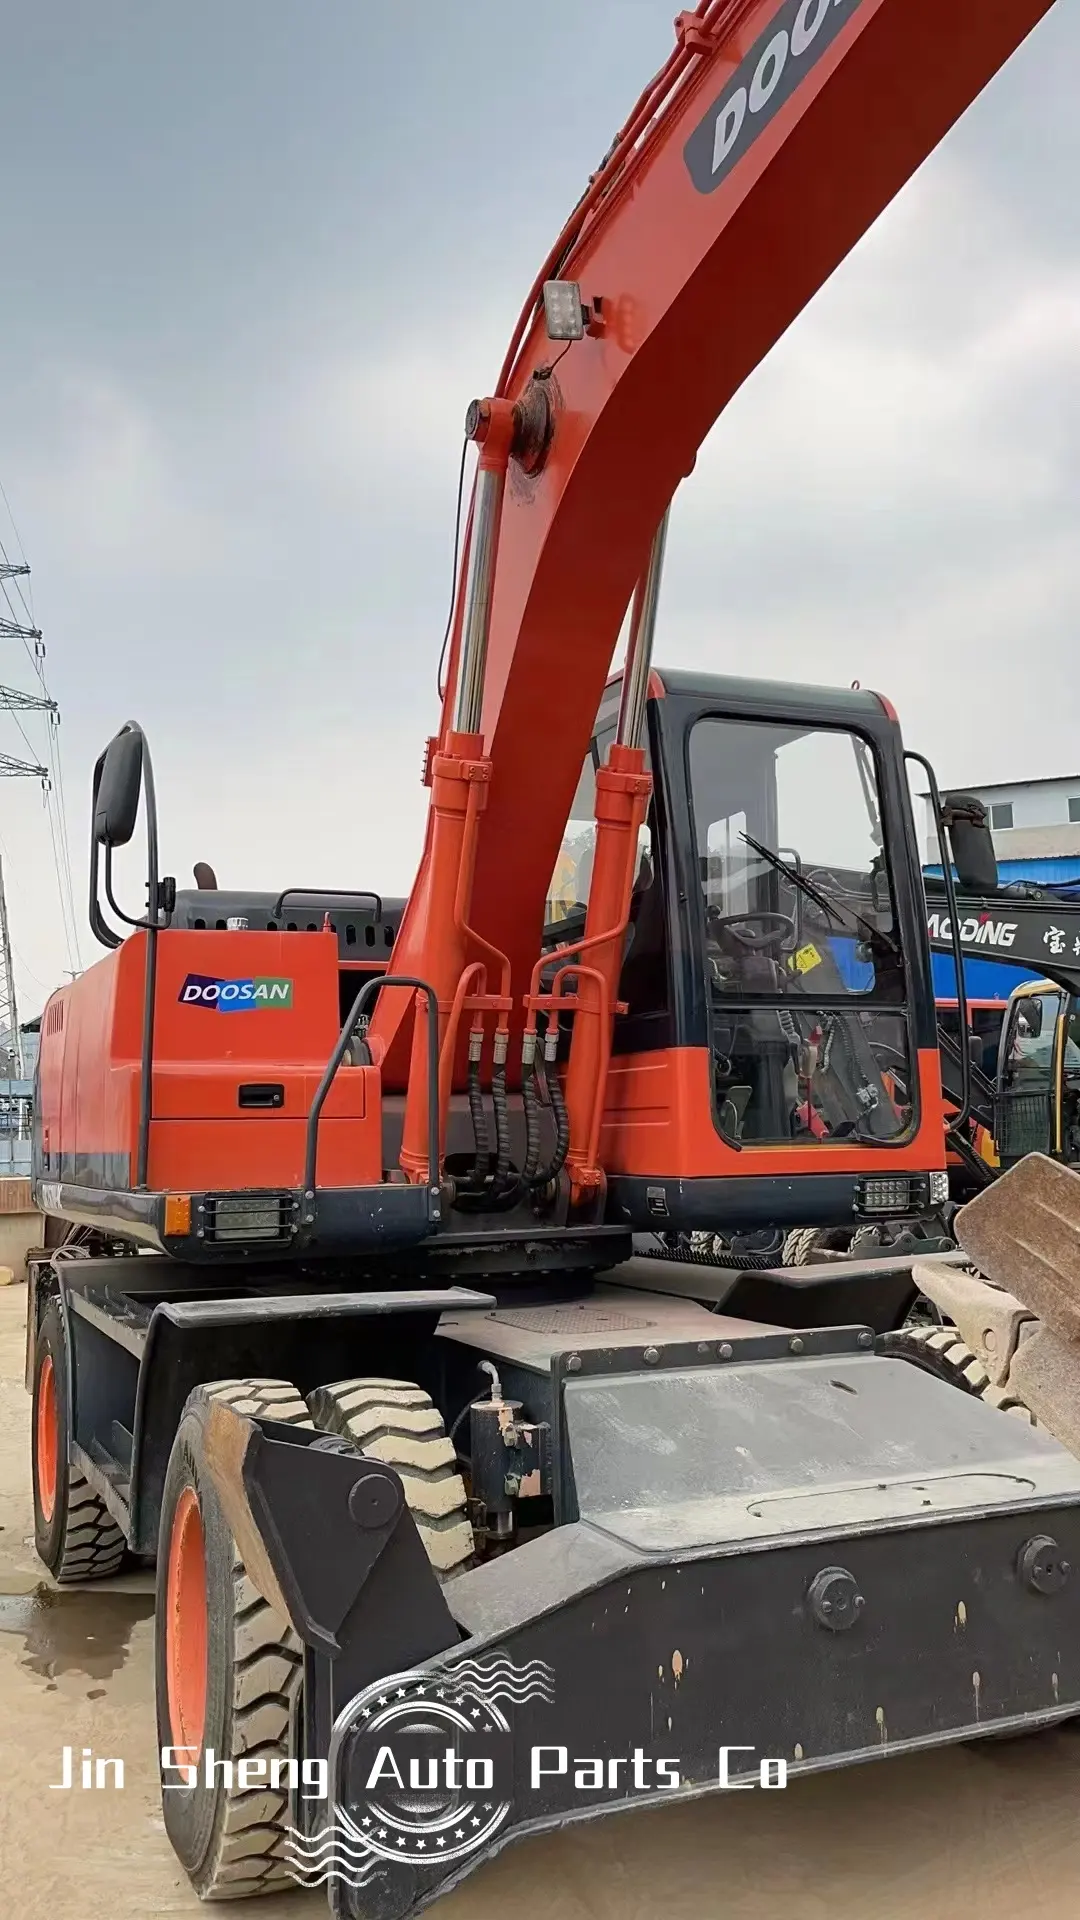 Vendano altri macchinari edili escavatore 15Ton escavatore a ruote Doosan DX150W-9C escavatore